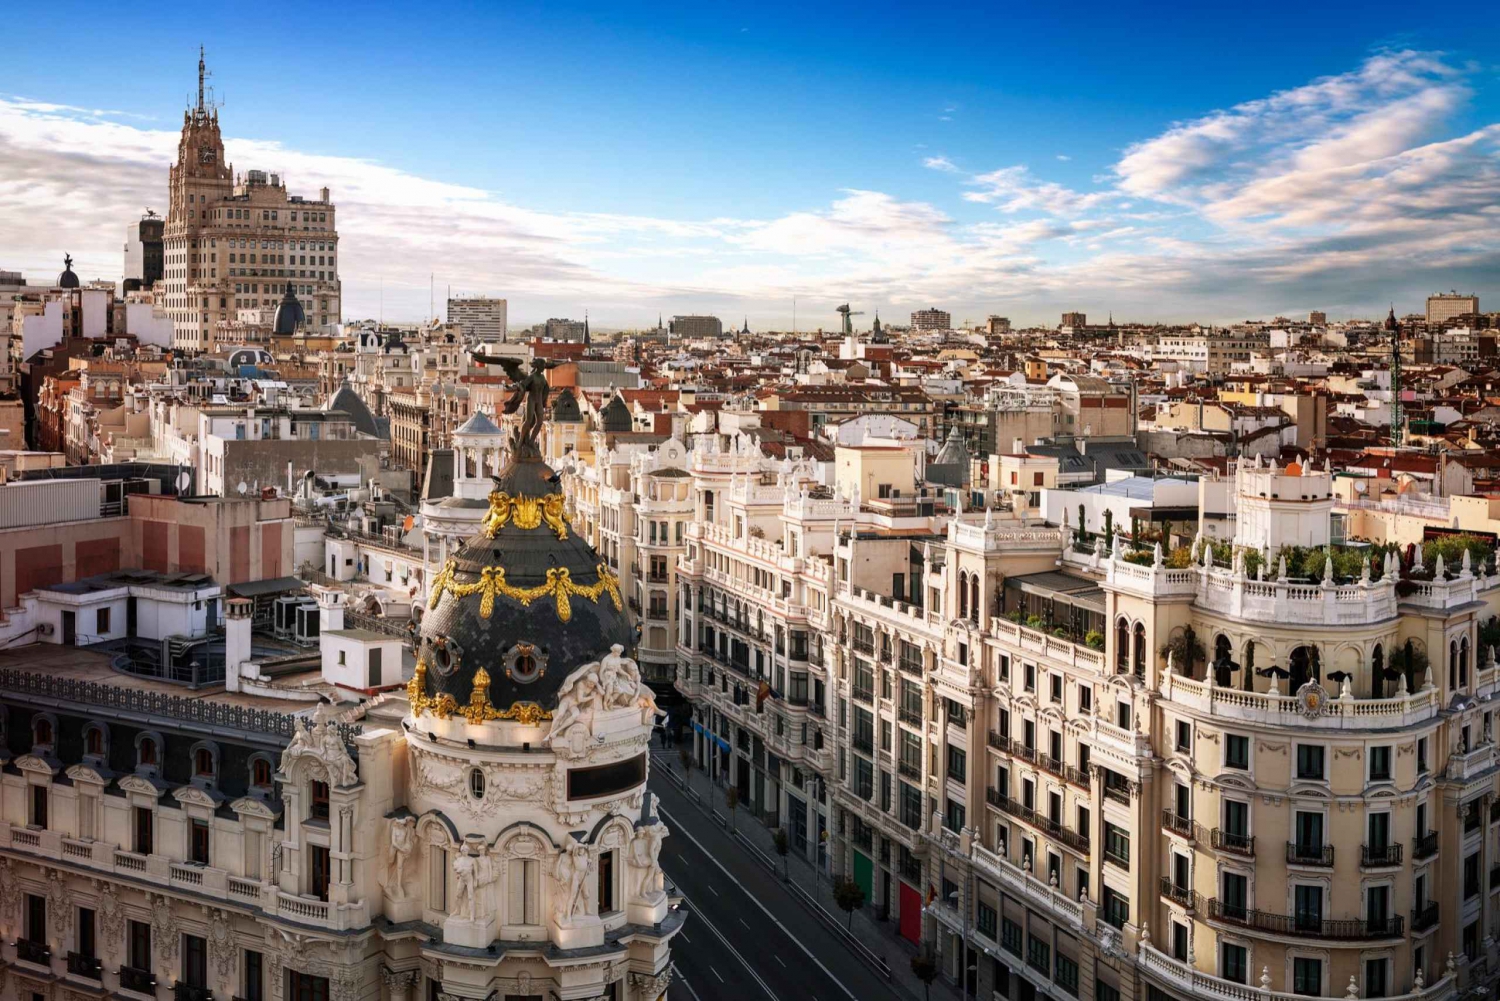 Madrid: Express wandeling met een local in 60 minuten